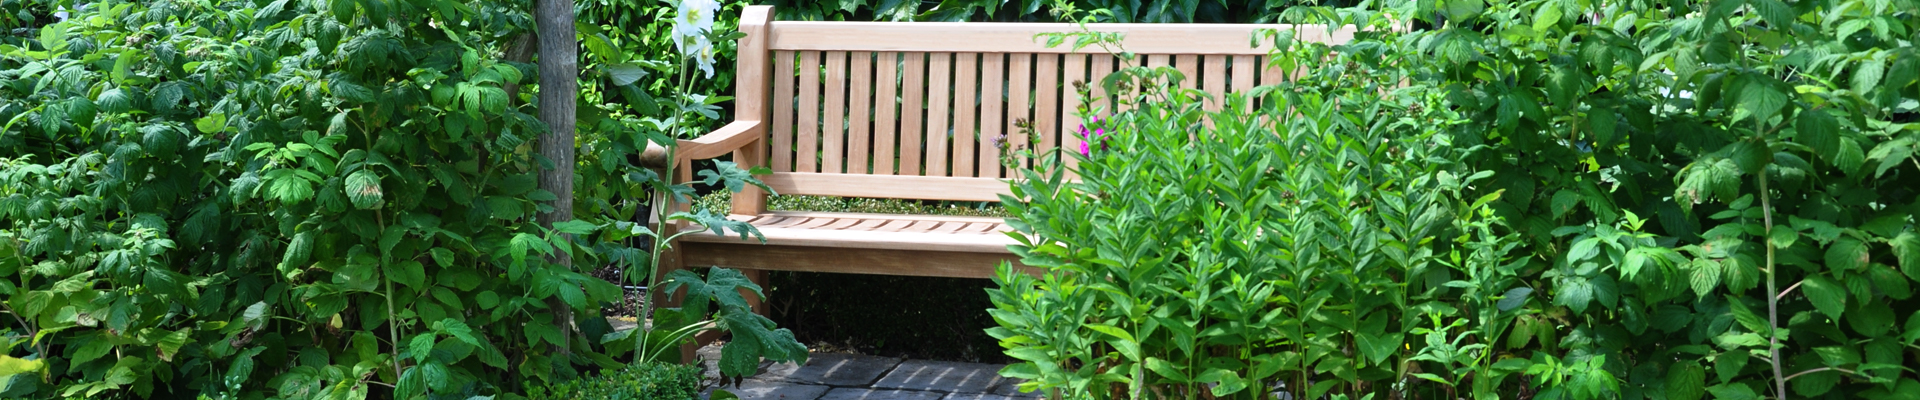 4 Seat Teak Garden Benches